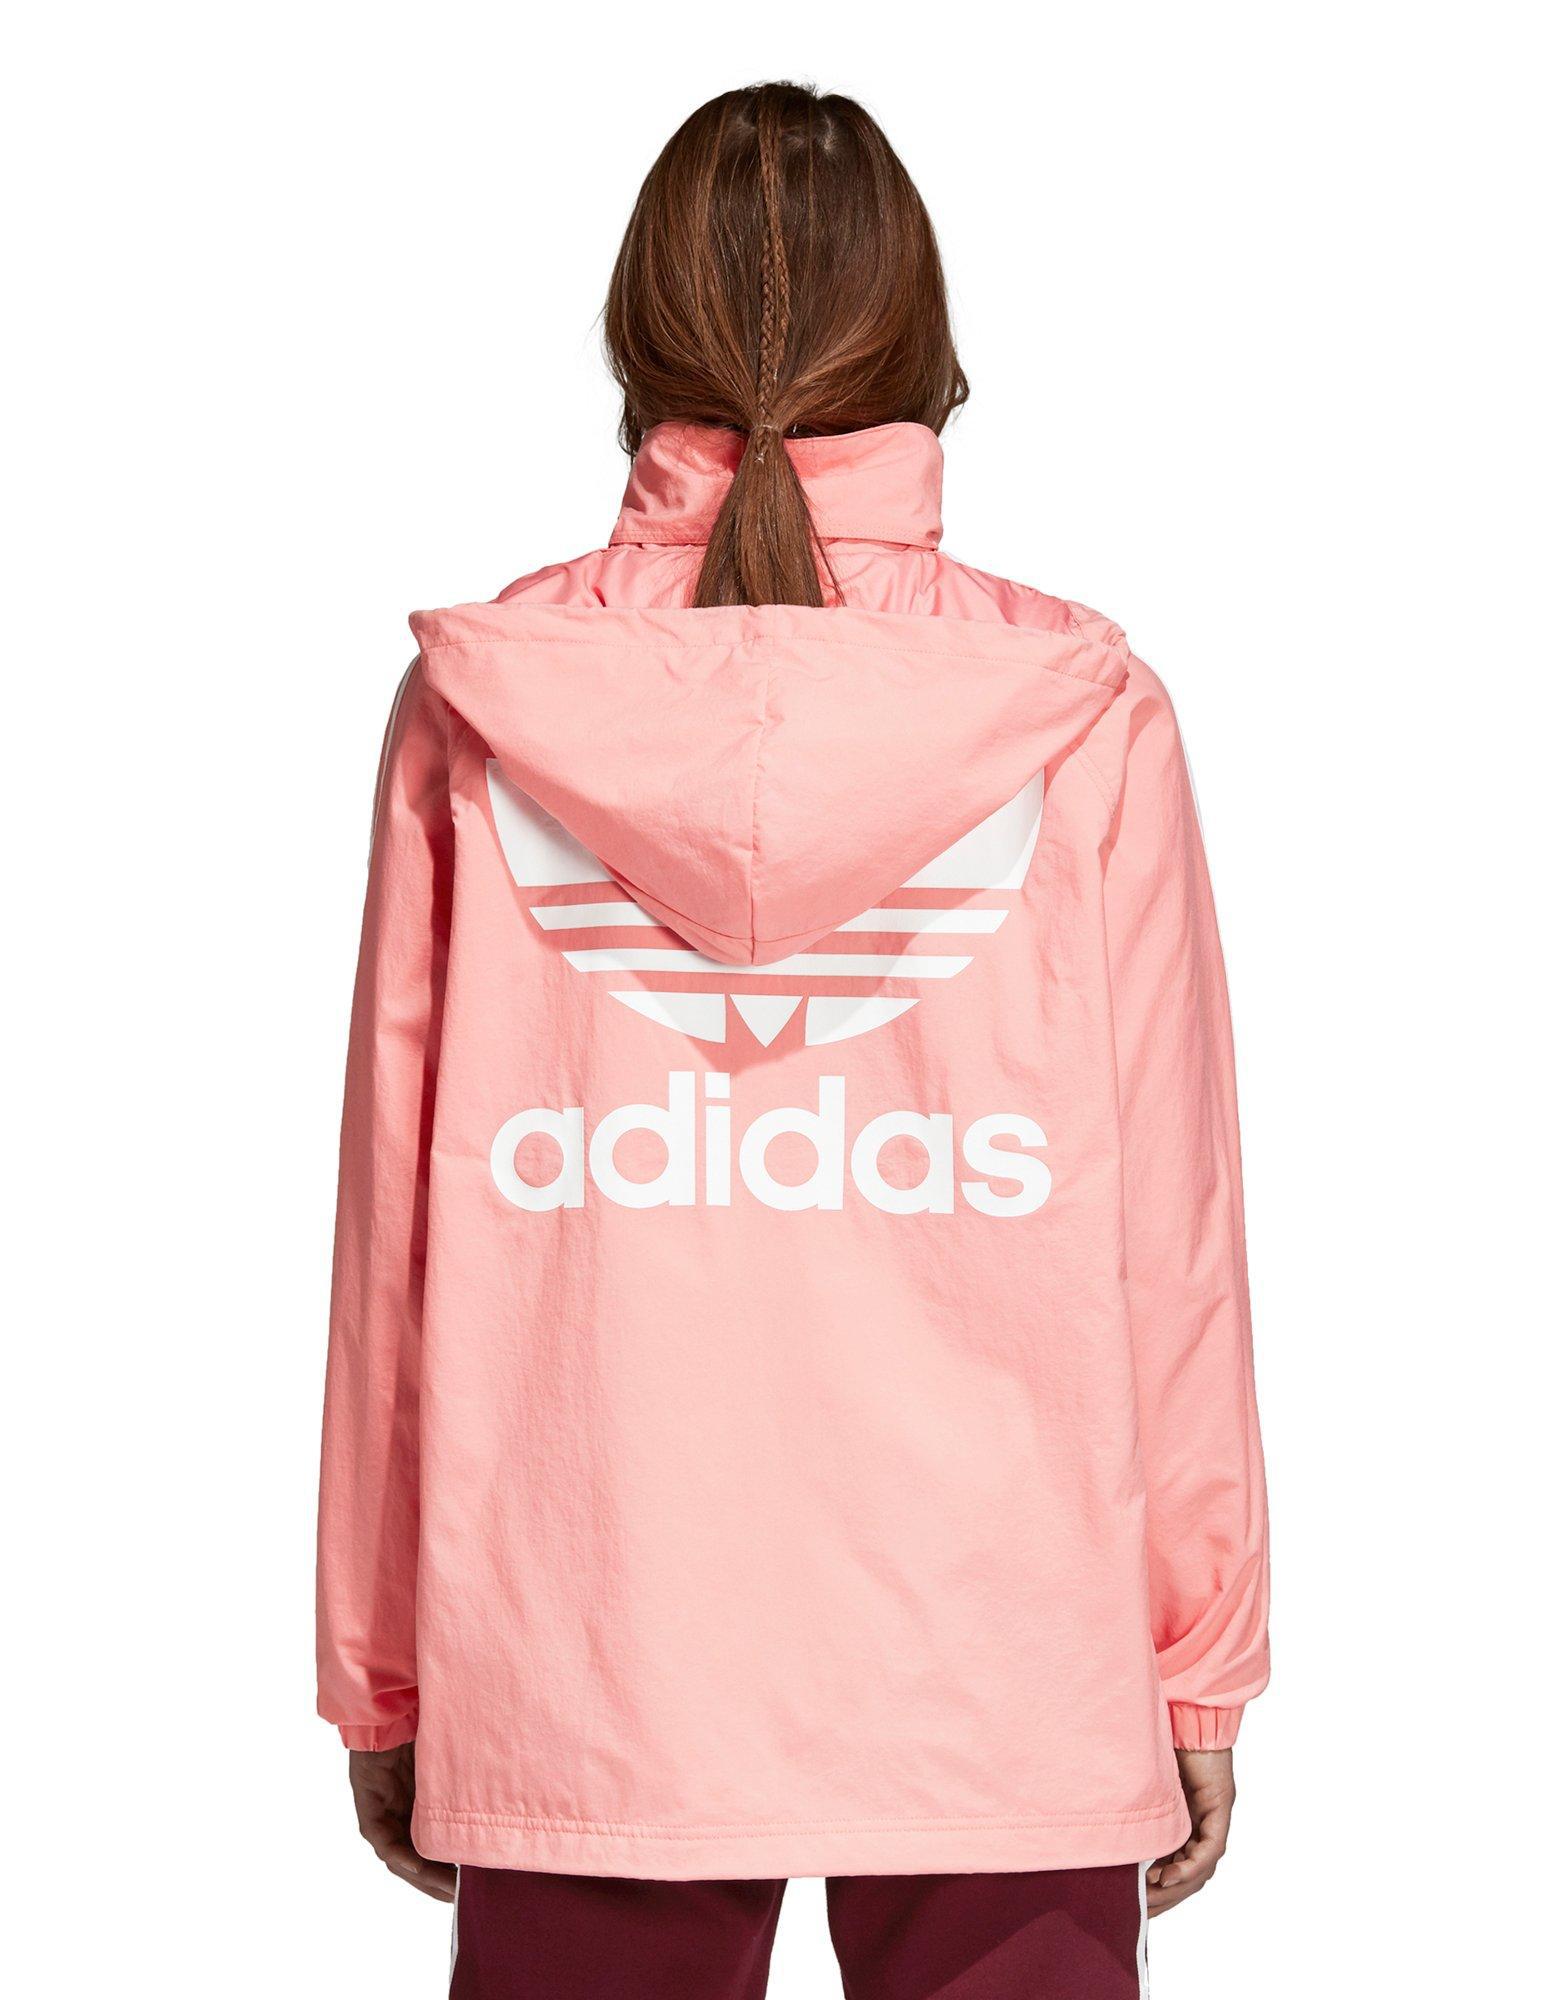 التصويت حجز اللياقه البدنيه صورة تشكيلة رصاصة adidas stadium jacket pink -  vistadigitalrent.com